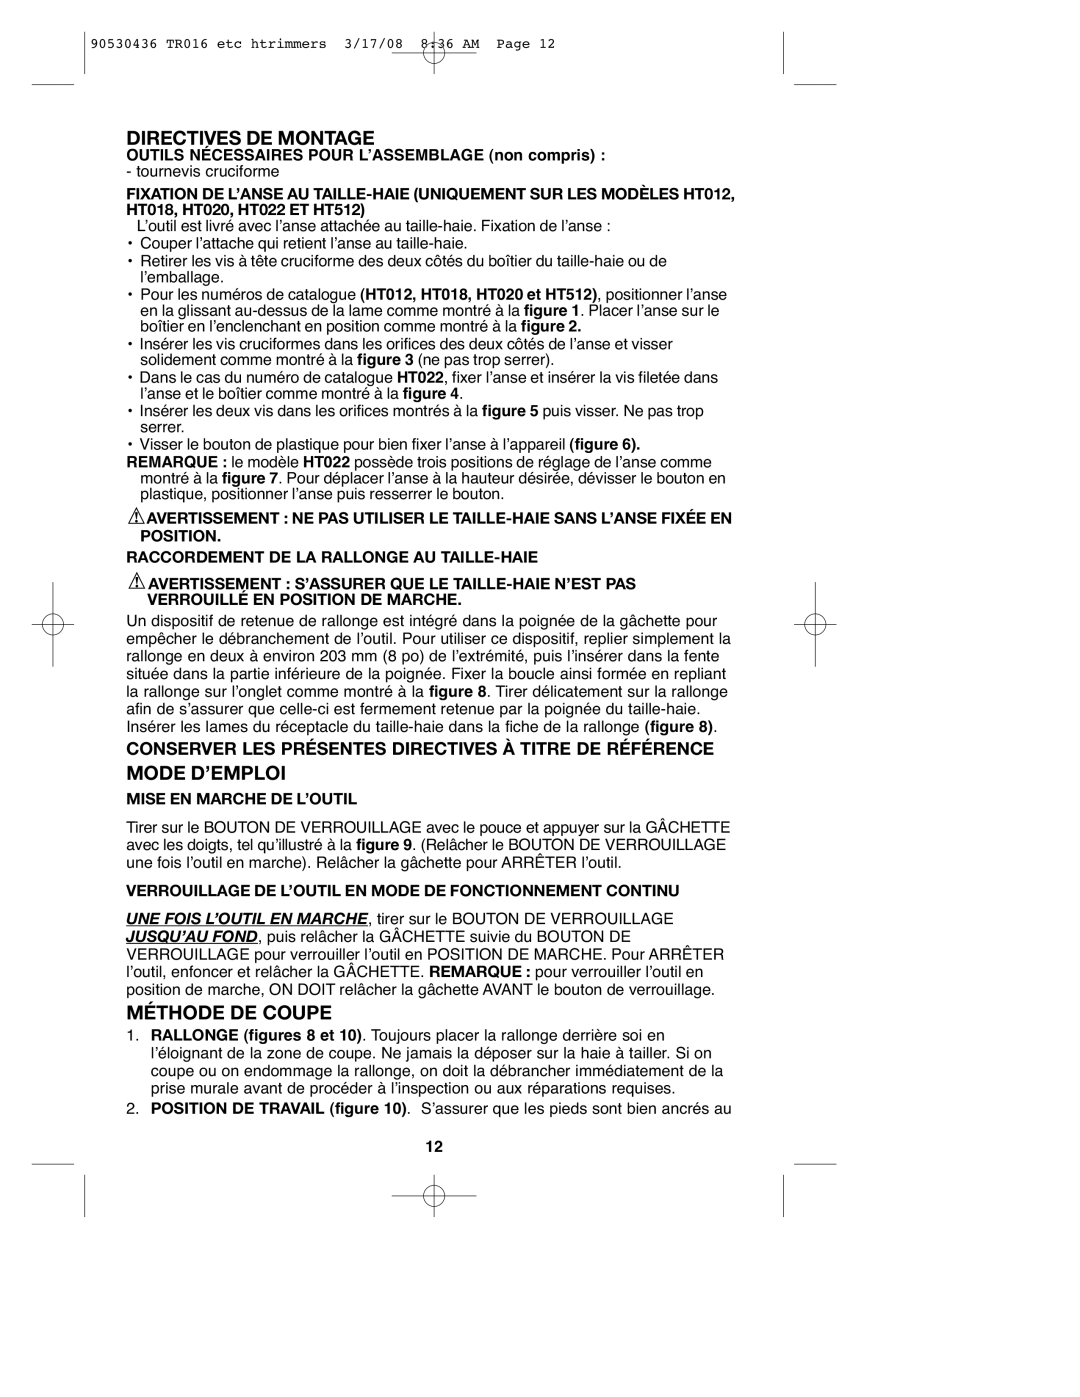 Black & Decker TR016 Directives De Montage, Mode D’Emploi, Méthode De Coupe, Raccordement De La Rallonge Au Taille-Haie 